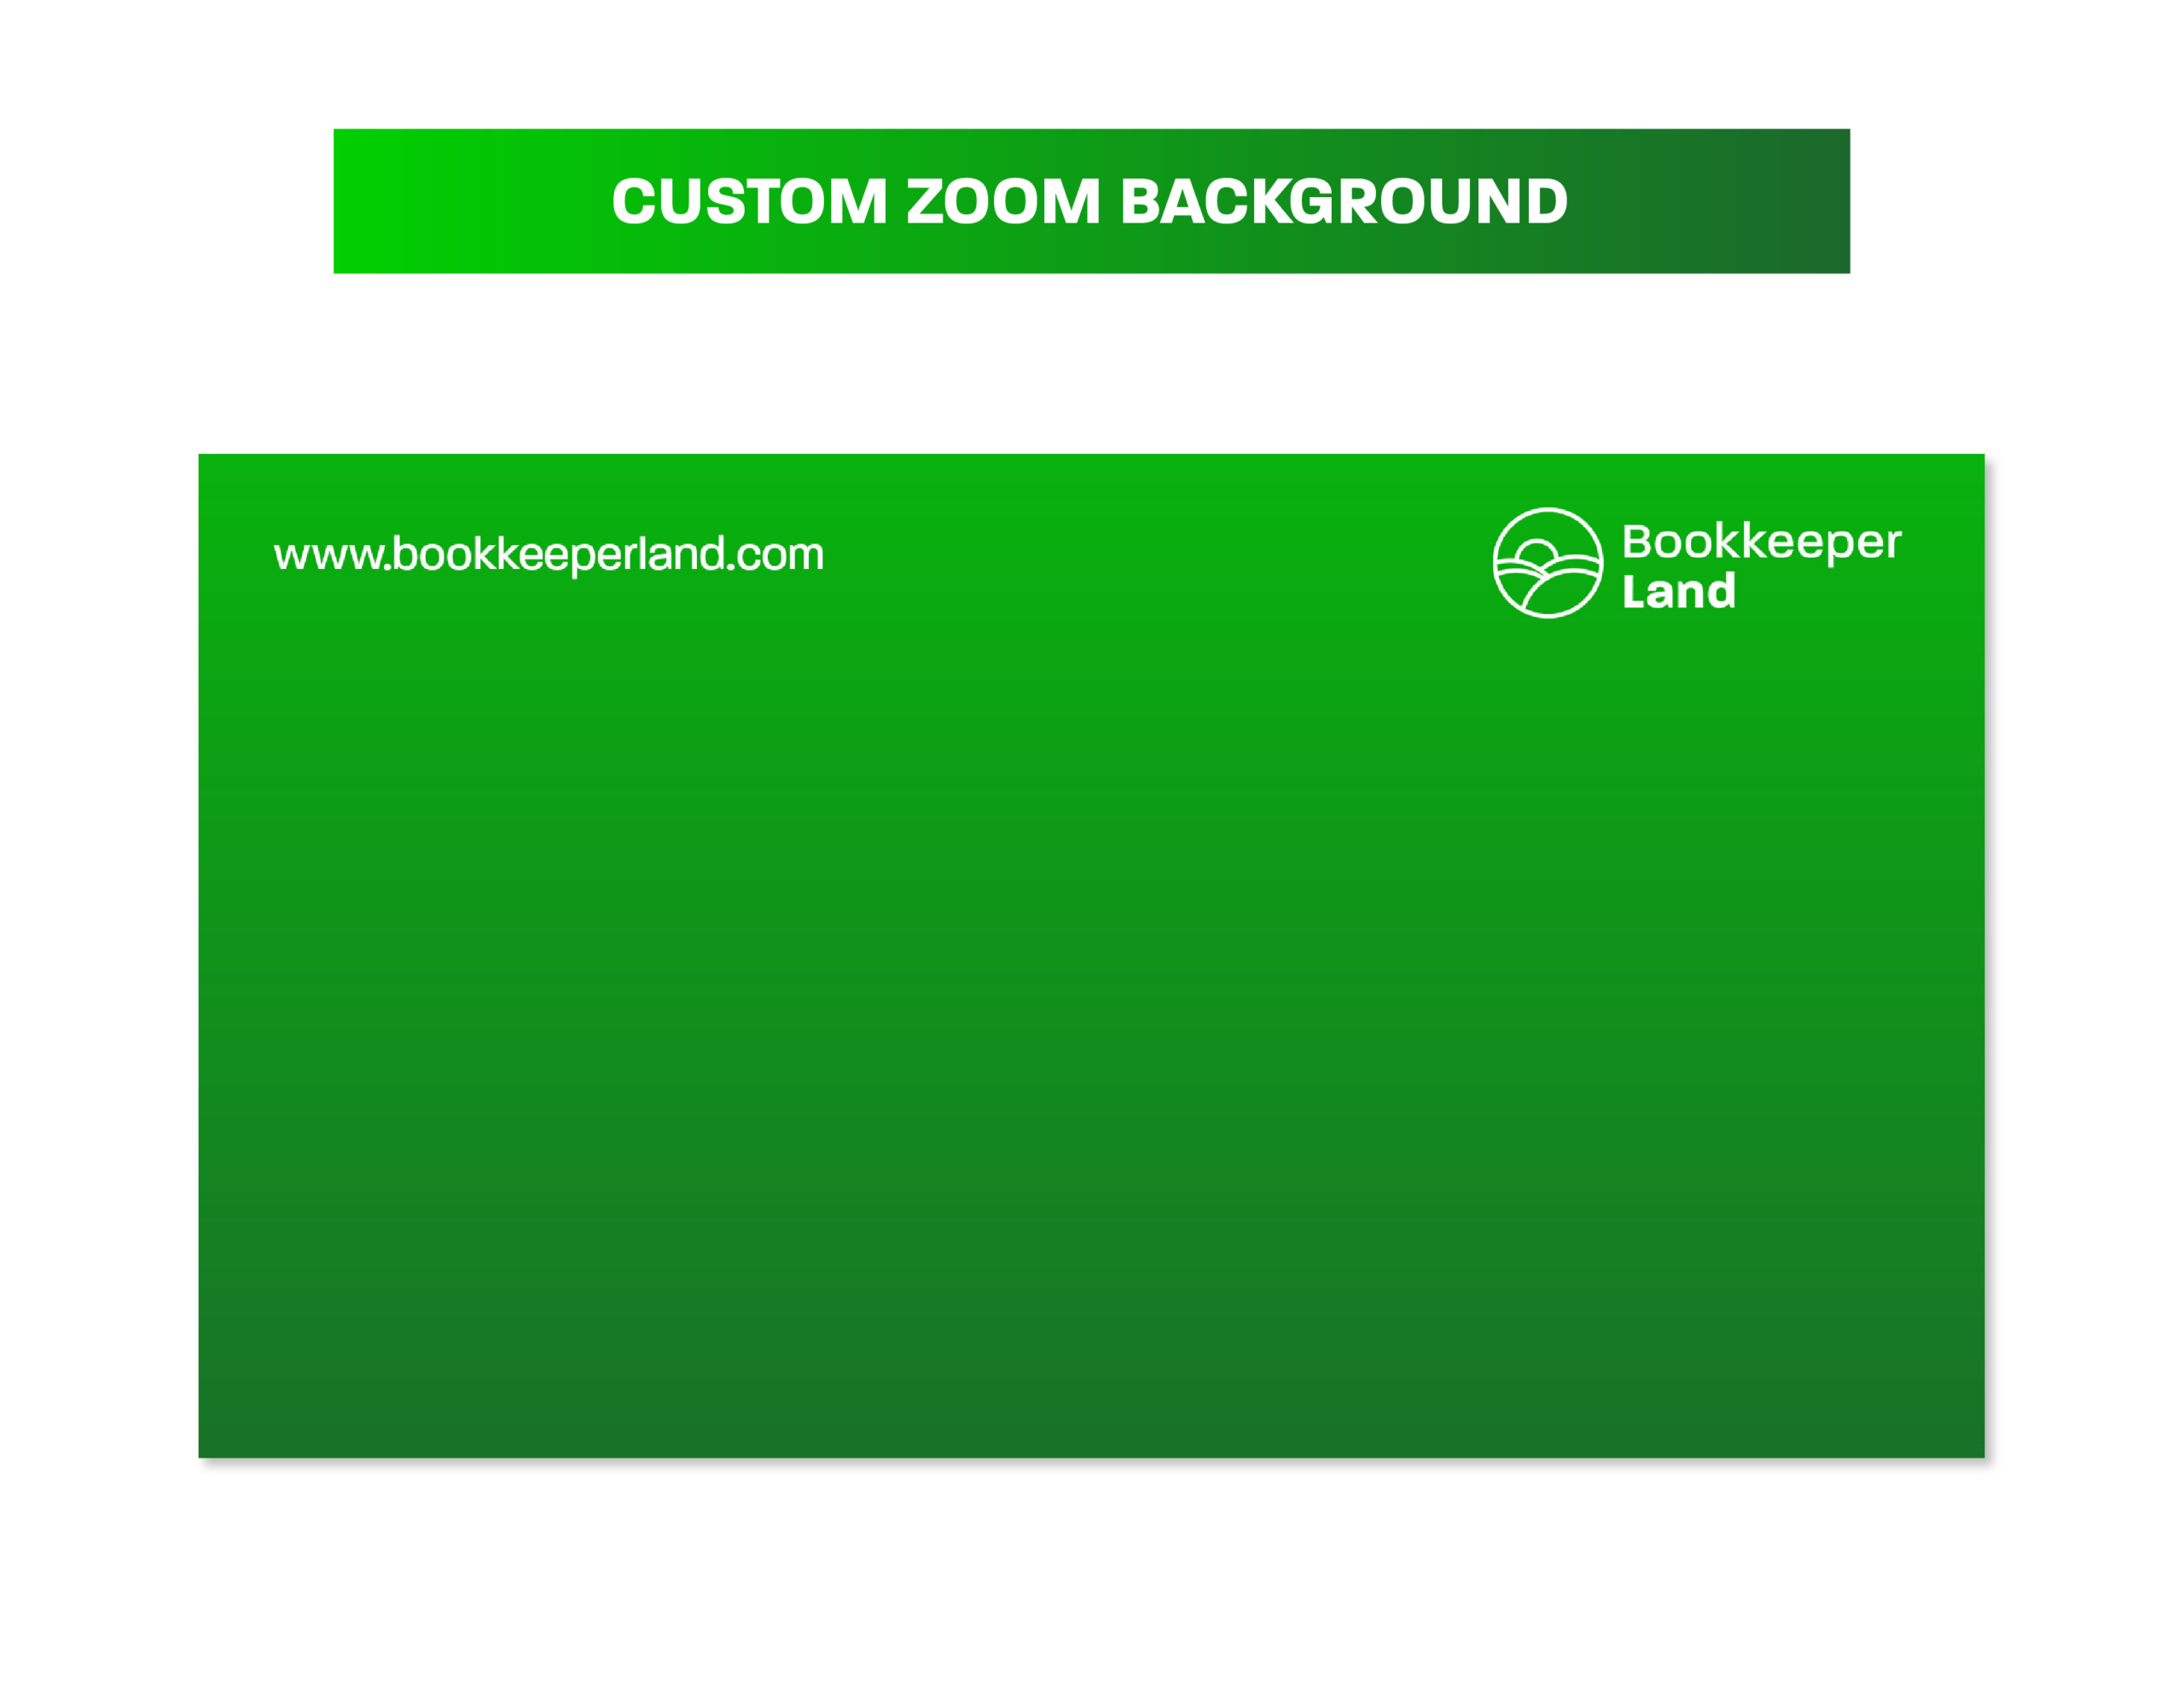 07BKLand_Showcase_Custom Zoom Background